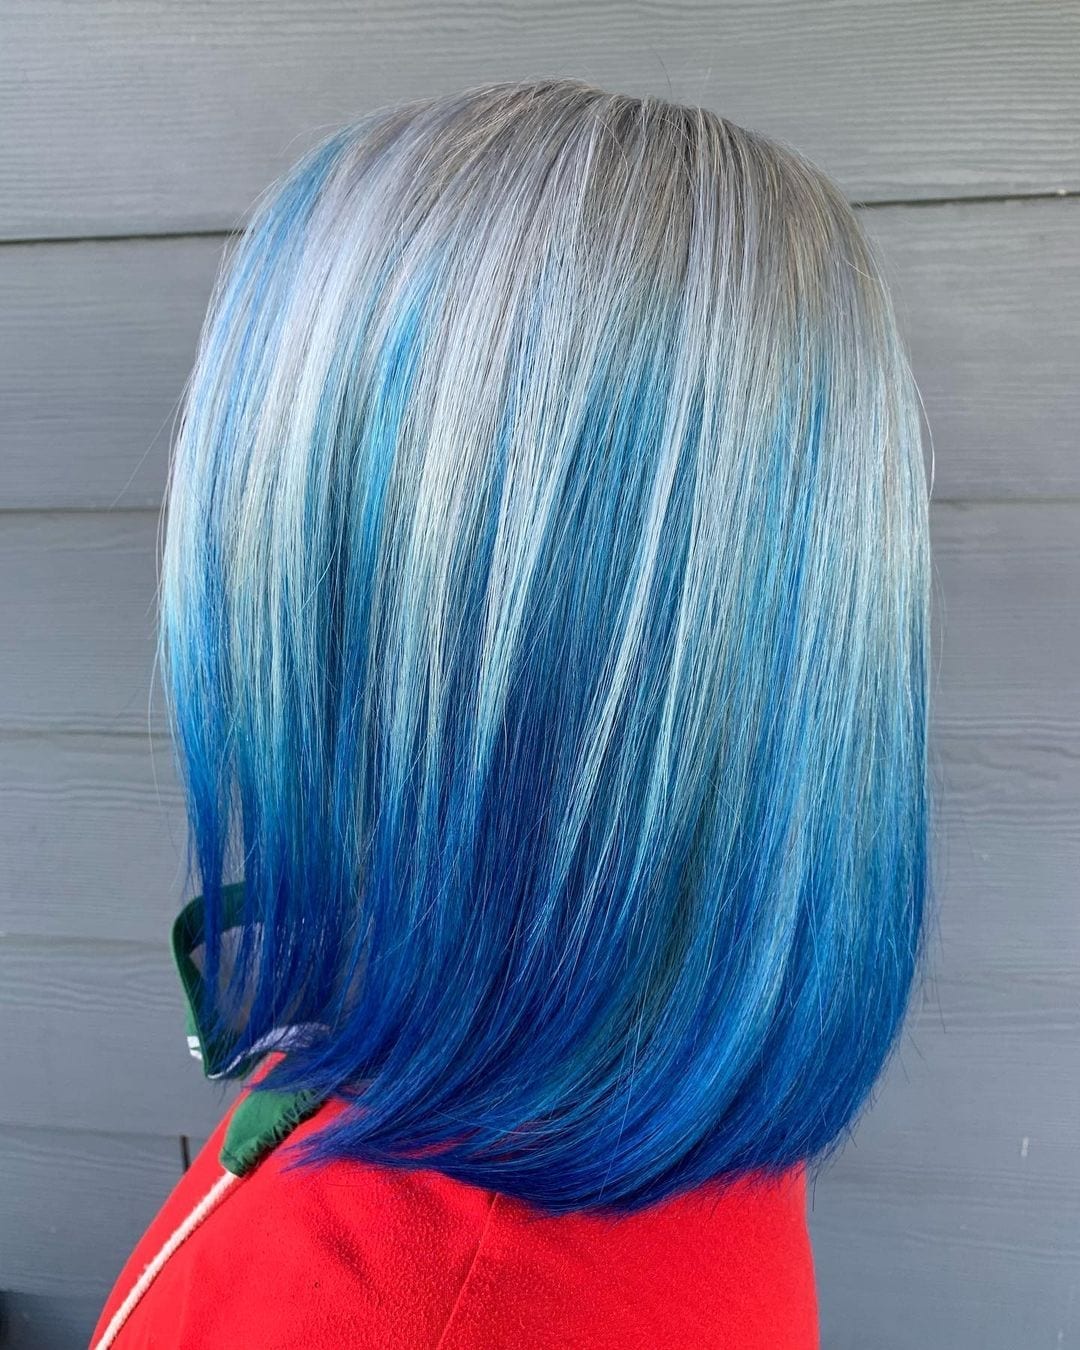 Persoon met lang haar dat blauw is en bij de wortels grijs wordt.